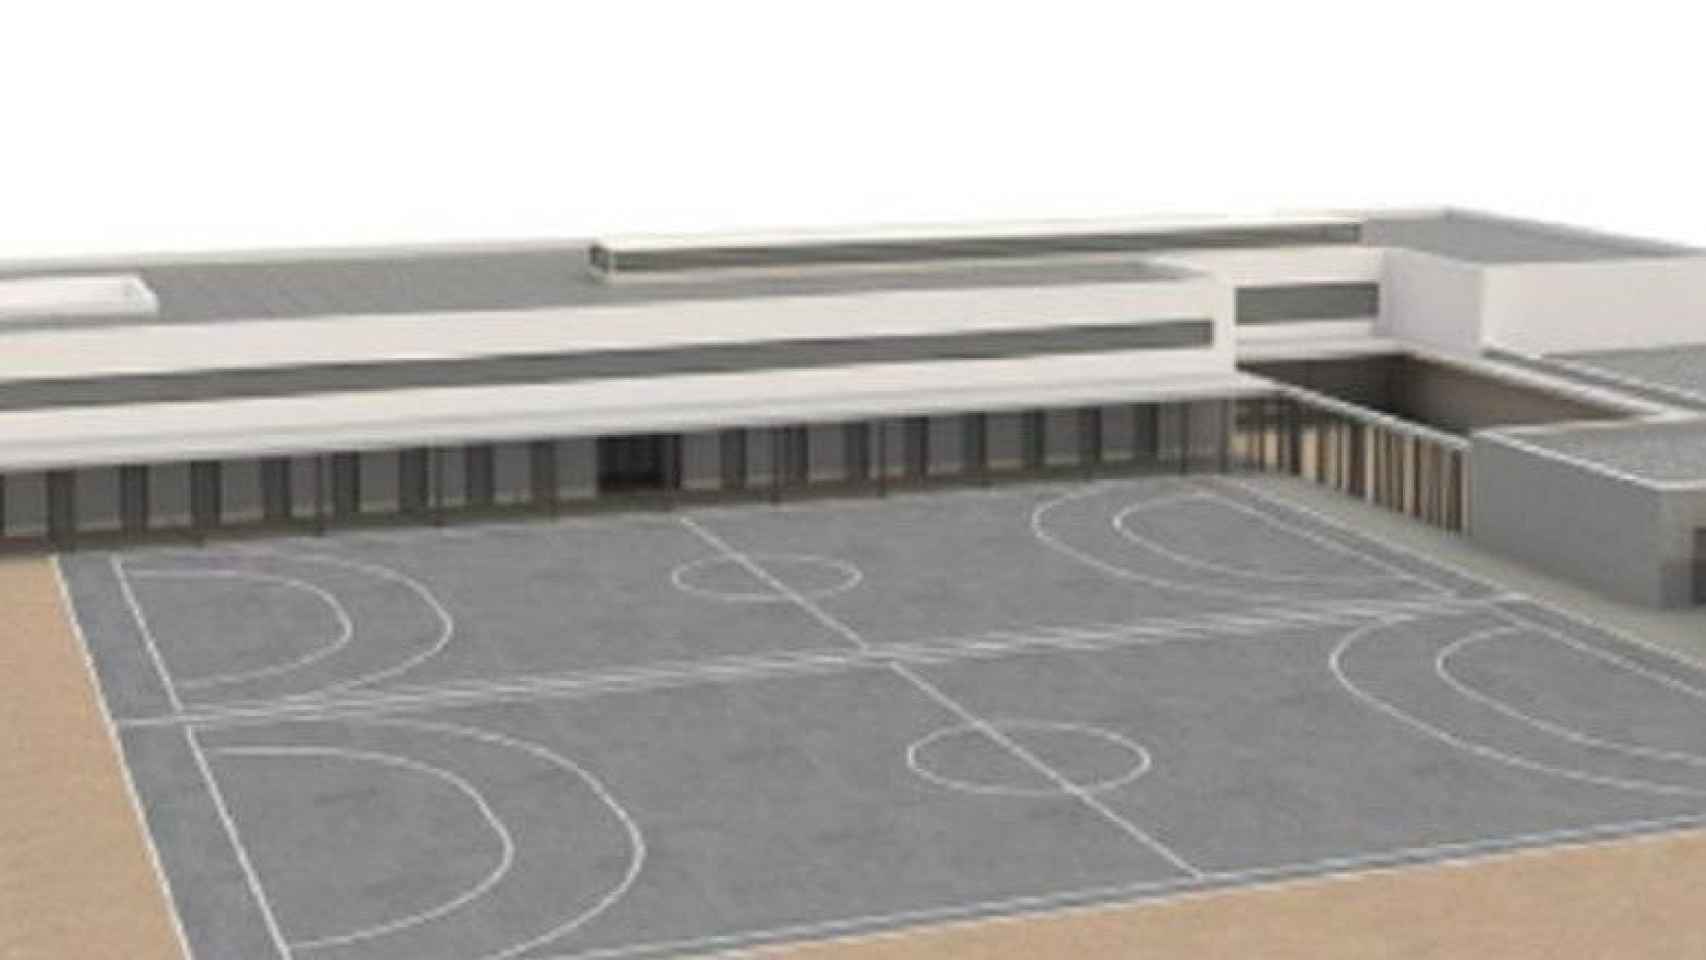 El proyecto del nuevo colegio contempla que dos pistas deportivas ocupen prácticamente todo el patio.